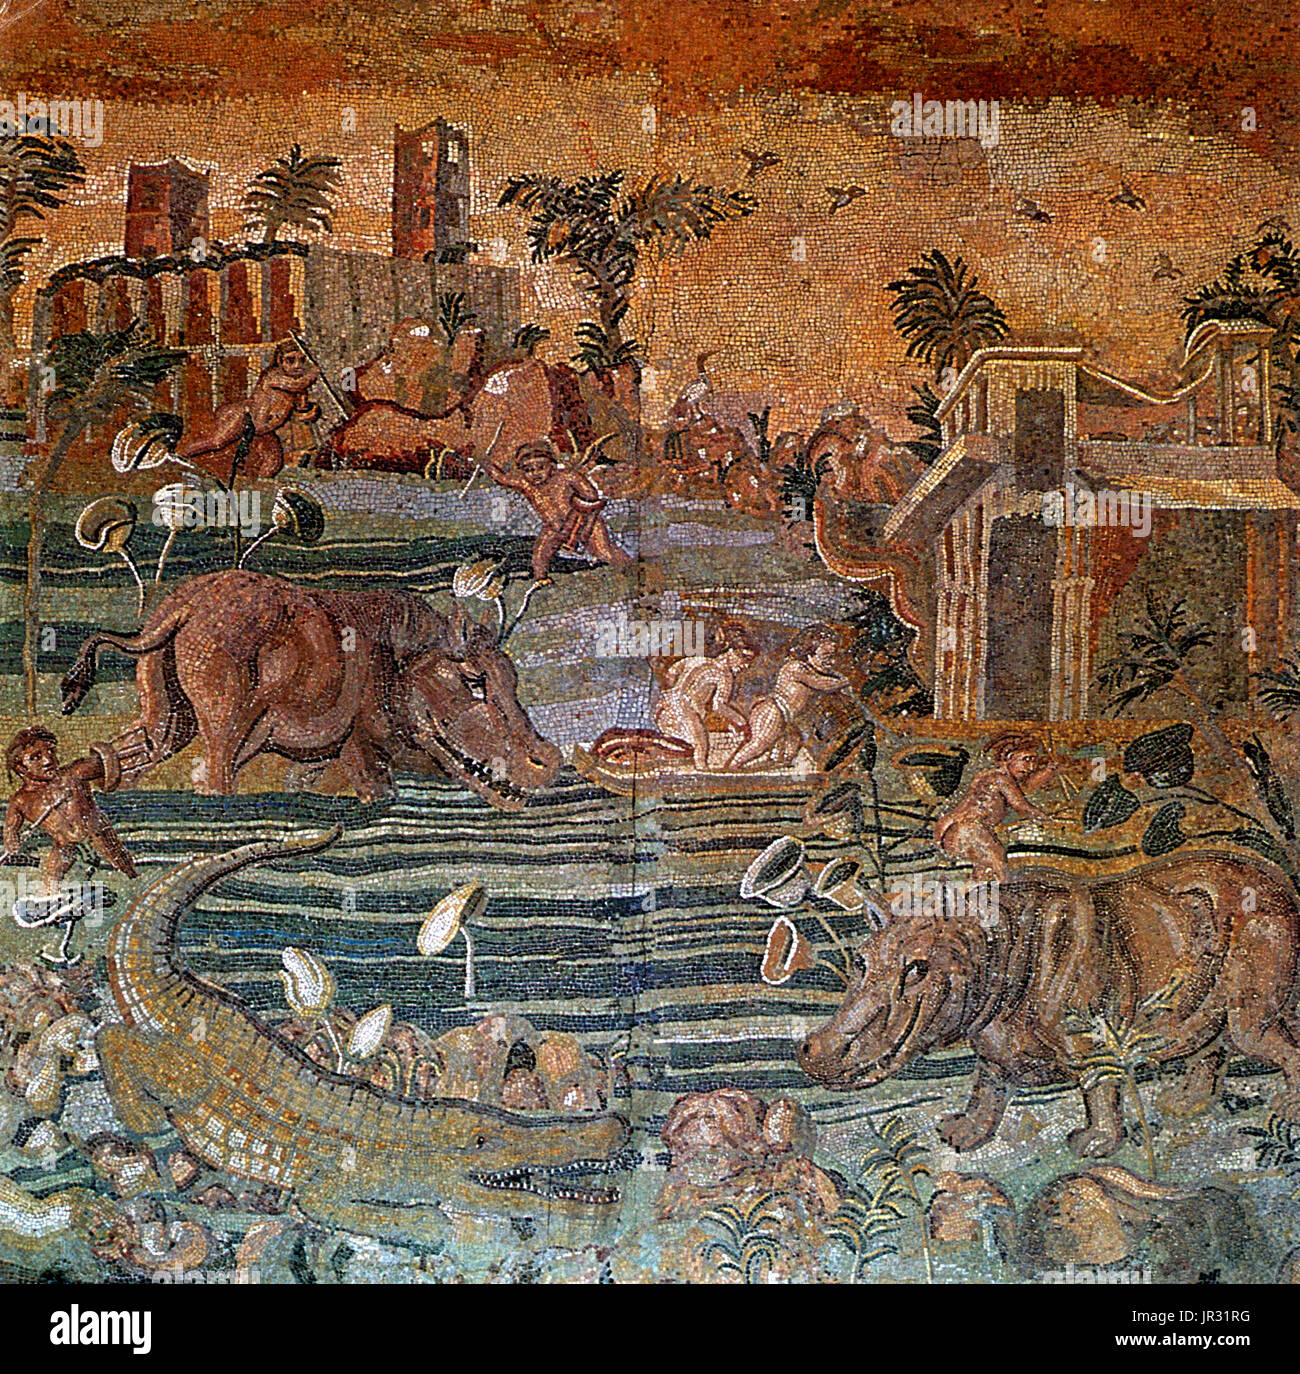 Mosaik mit den Wunder-Nil von einem römischen Bad. Ägypten und nilotischen Landschaft wurde im ersten Jahrhundert nach Christus unter den oberen Klassen sehr in Mode. Der Künstler versucht in diesem Mosaik Nilpferde und Krokodile zu reproduzieren. Römische Mosaiken entstehen aus geometrischen Blöcken genannt Mosaiksteine, gemeinsam in der Lage, um die Formen von Figuren, Motive und Muster zu erstellen. Materialien für Mosaiksteine stammen aus lokalen Quellen aus Naturstein, mit den Zusätzen von geschnittenen Ziegel, Fliesen und Keramik überwiegend farbigen Schattierungen, erstellen, blau, schwarz, rot, weiß und gelb. Mehrfarbige Muster Stockfoto